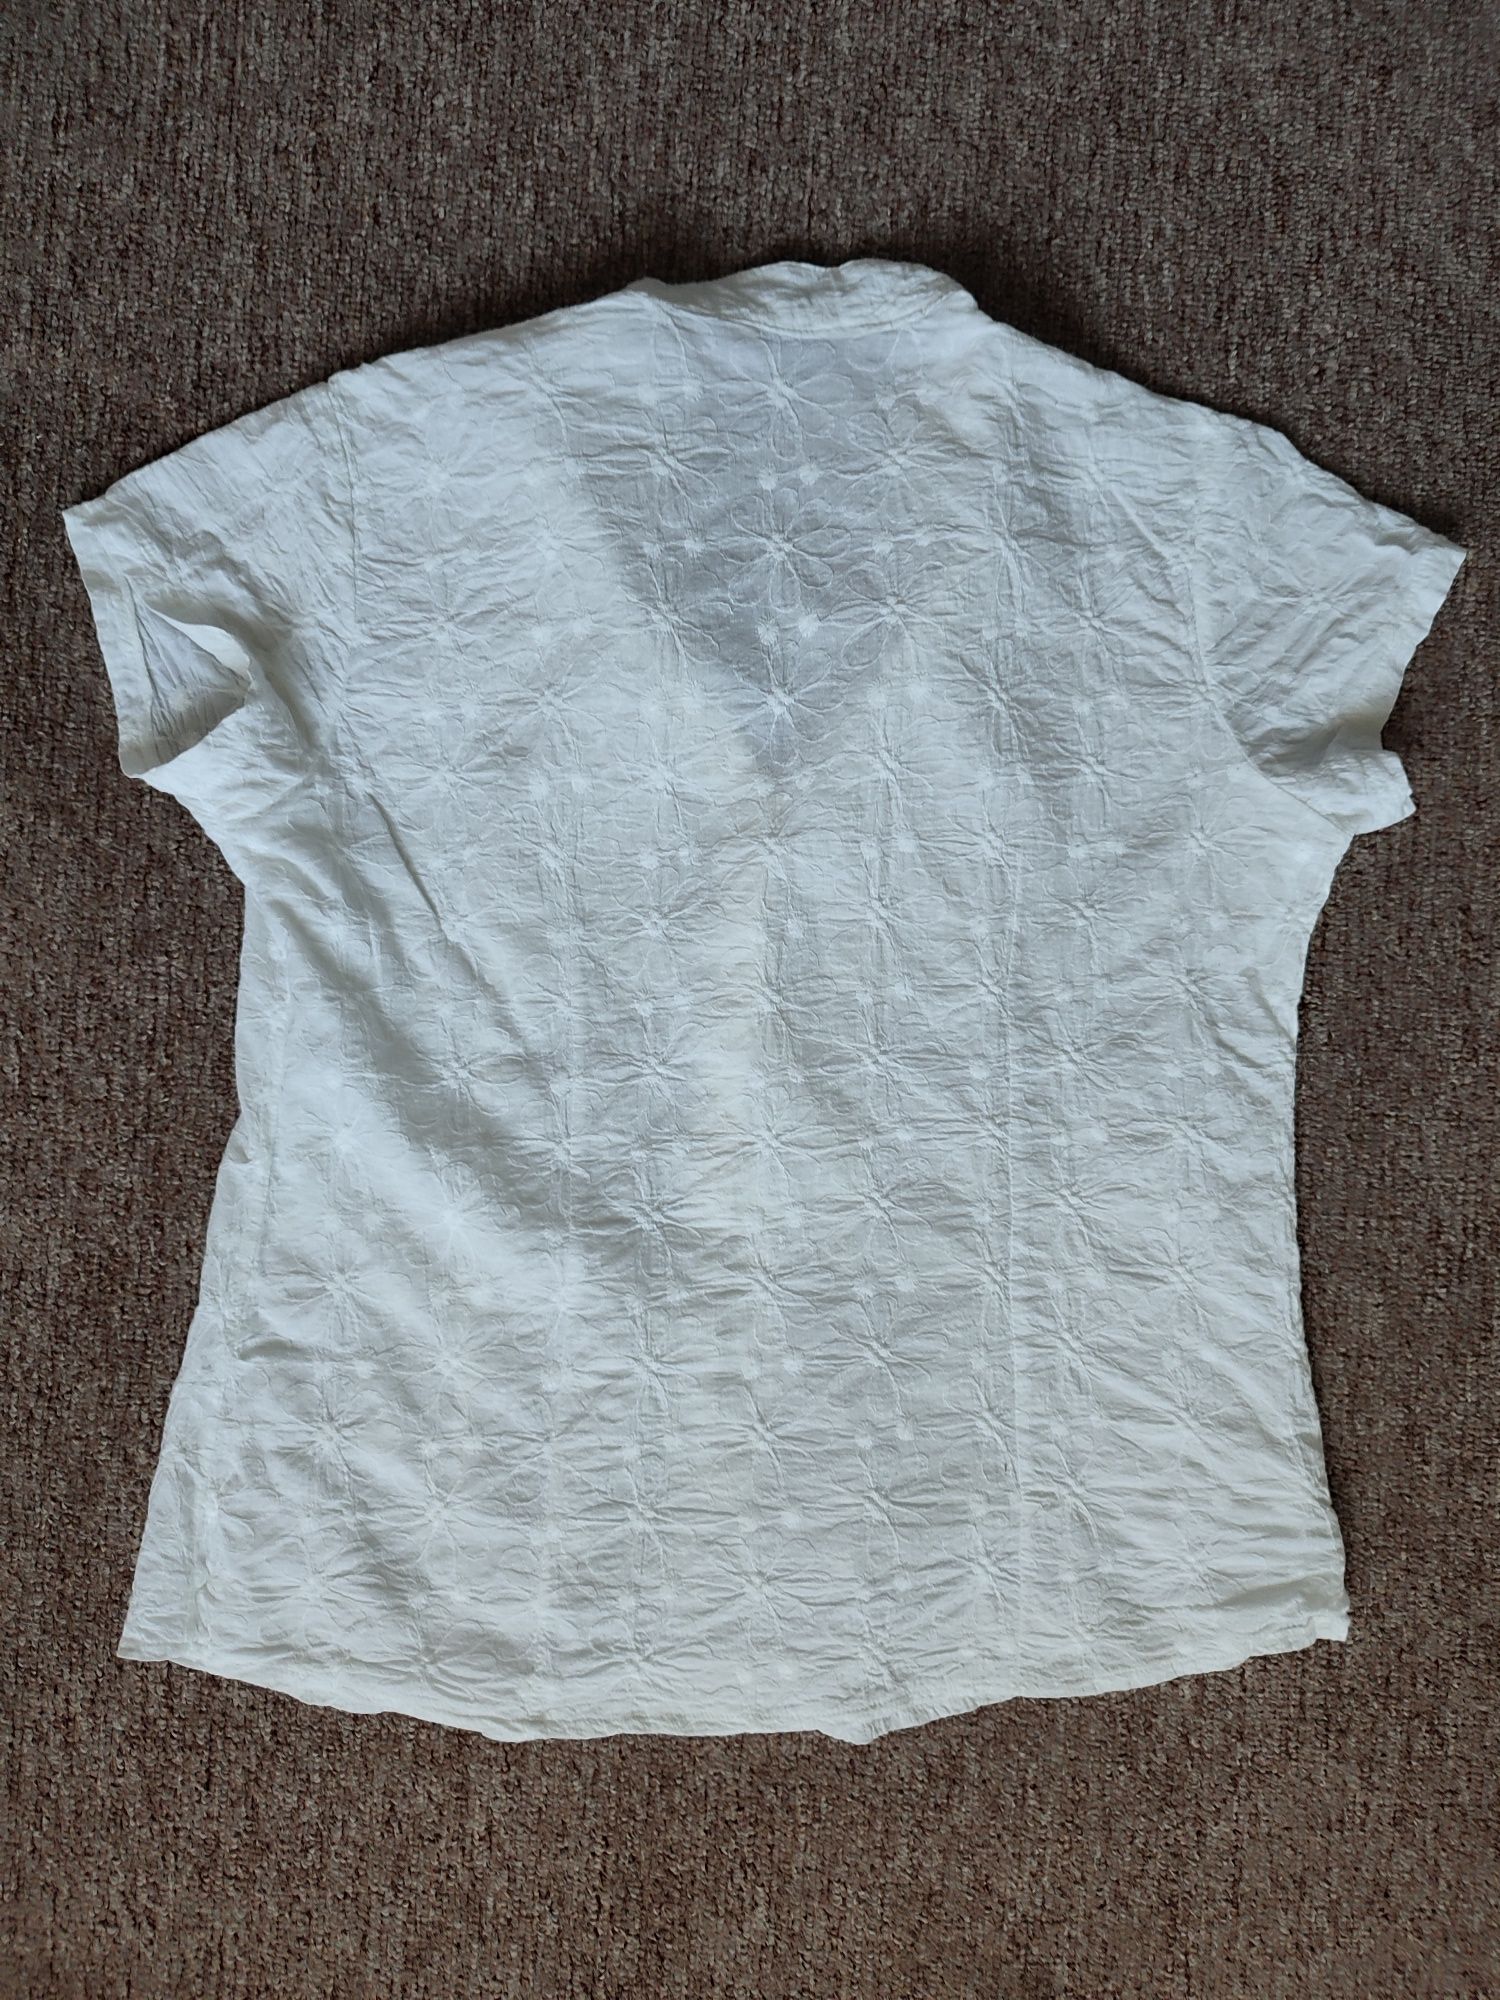 Koszulka koszula bluzka damska wizytowa biała rozmiar 38